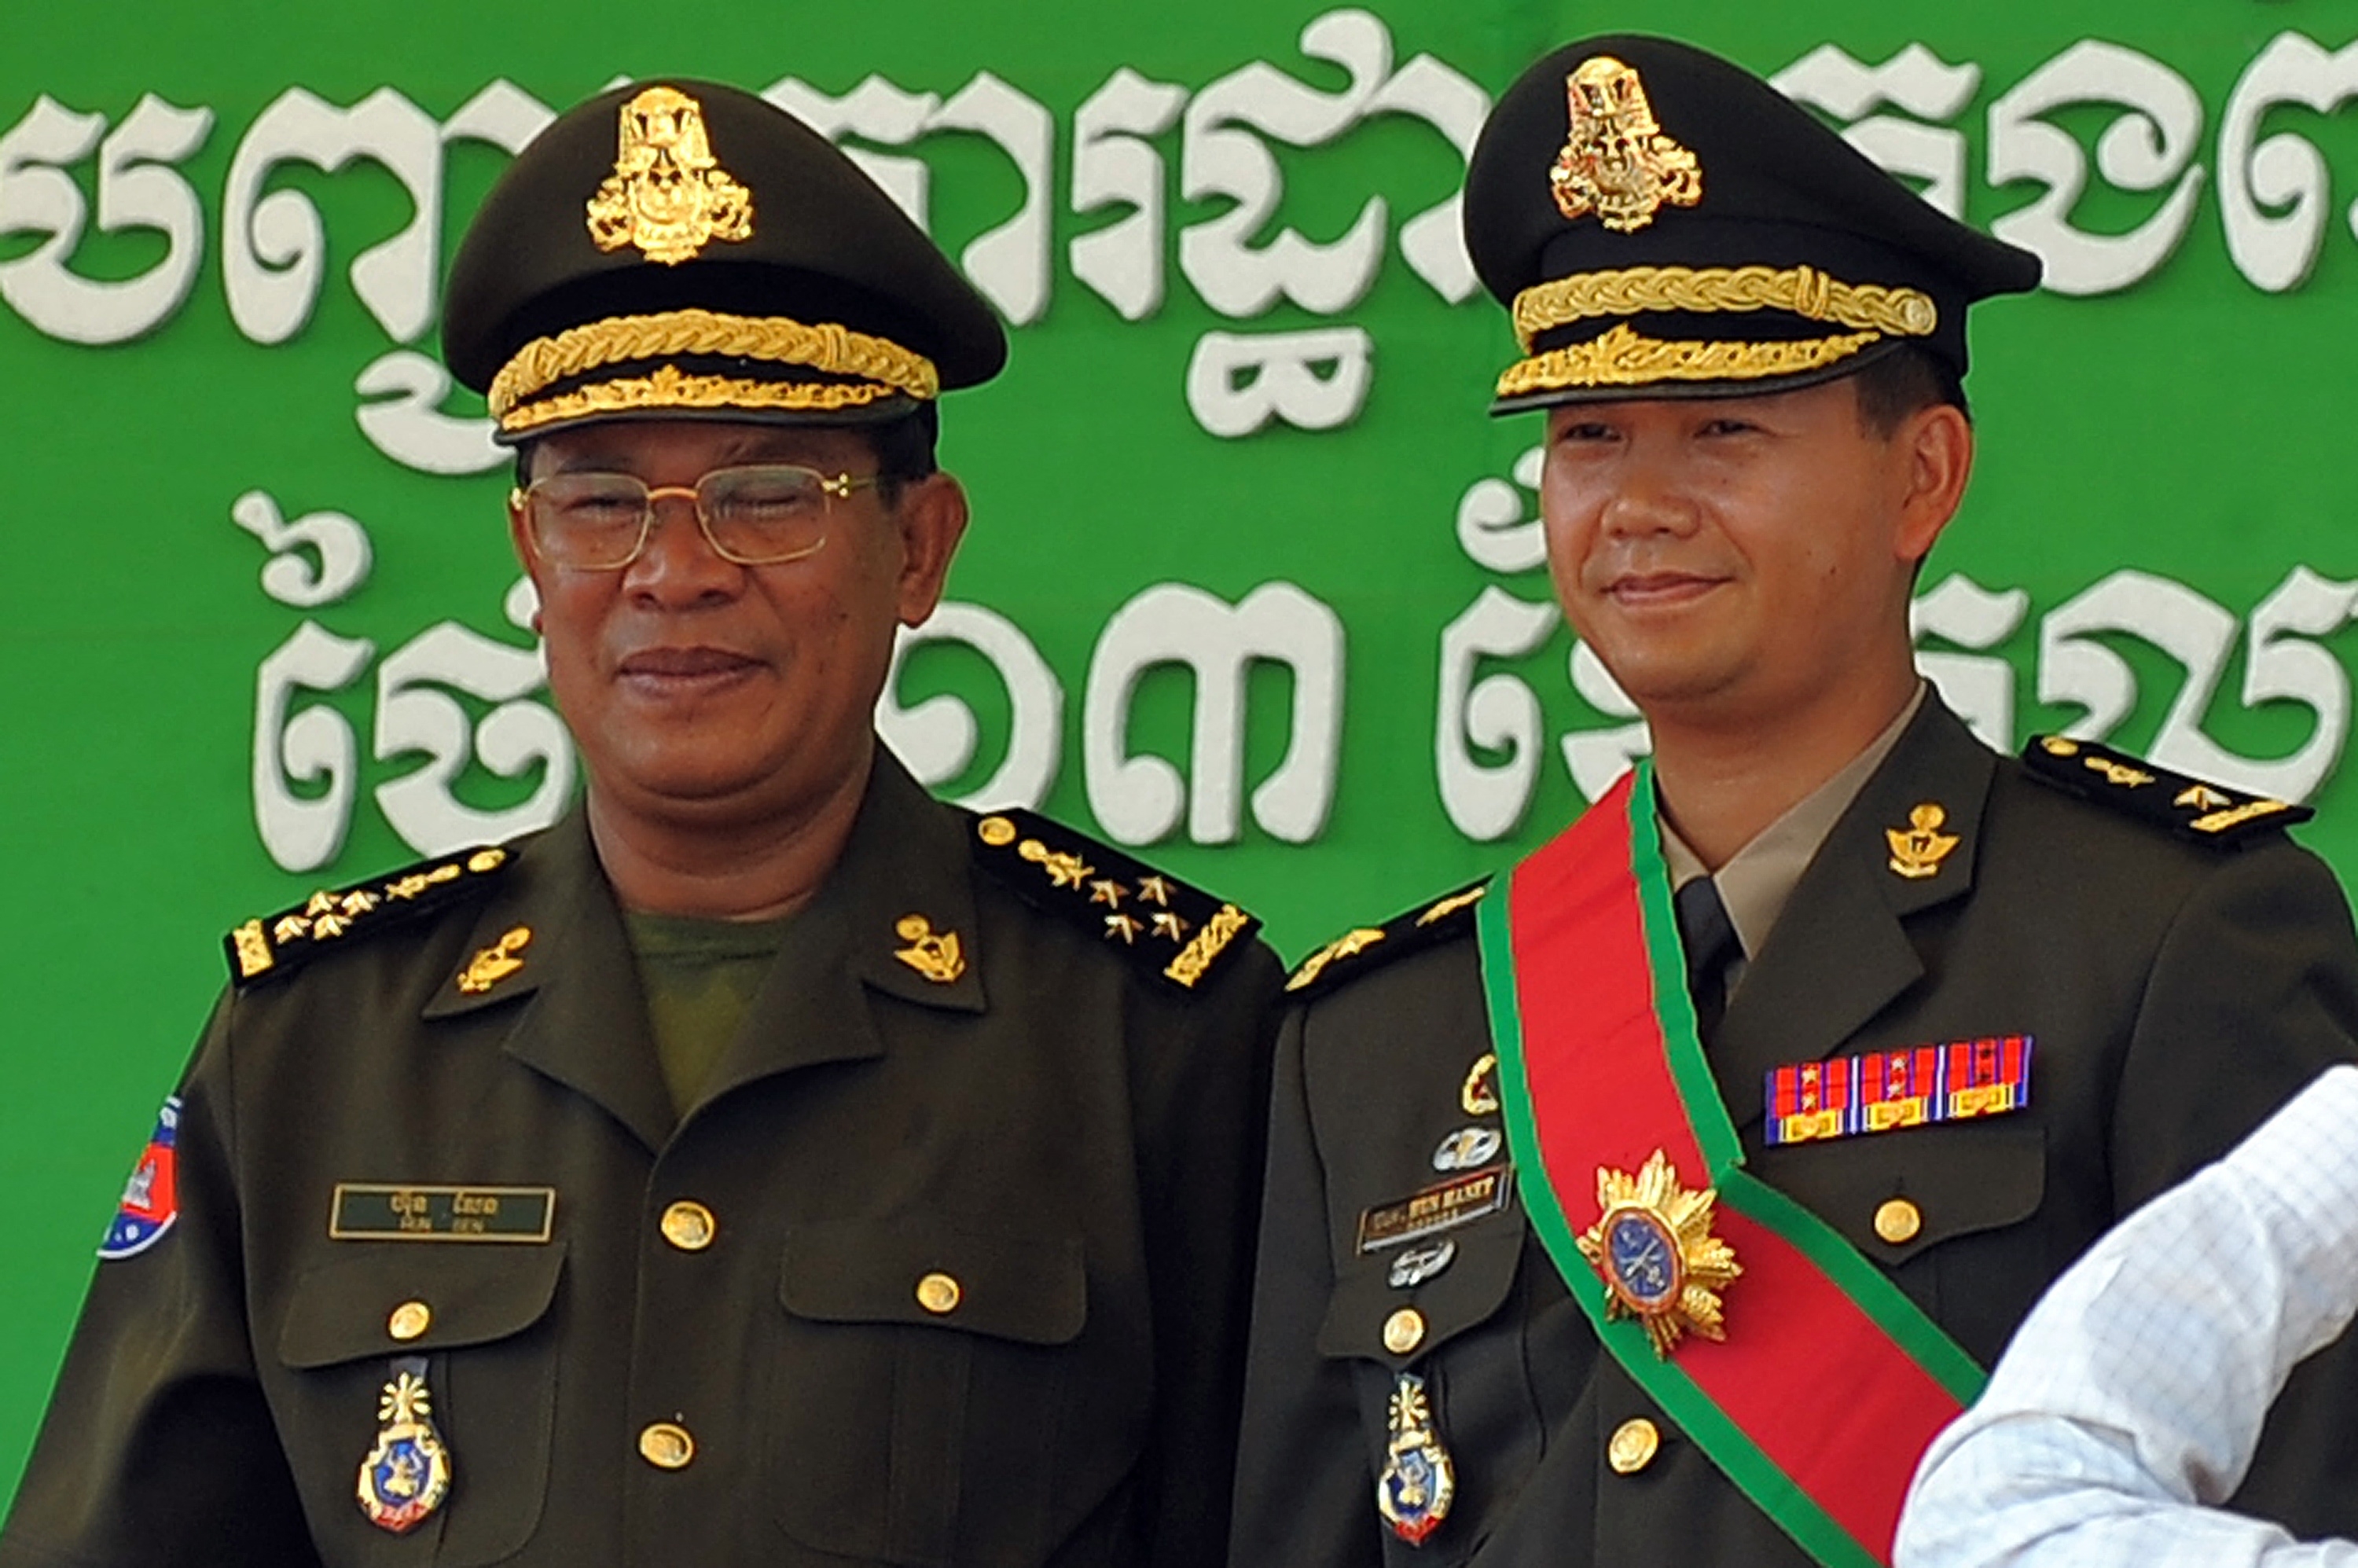 훈센 캄보디아 총리와 그의 장남 훈 마넷 차기 총리가 나란히 군복을 입고 서 있는 모습.  AFP 연합뉴스